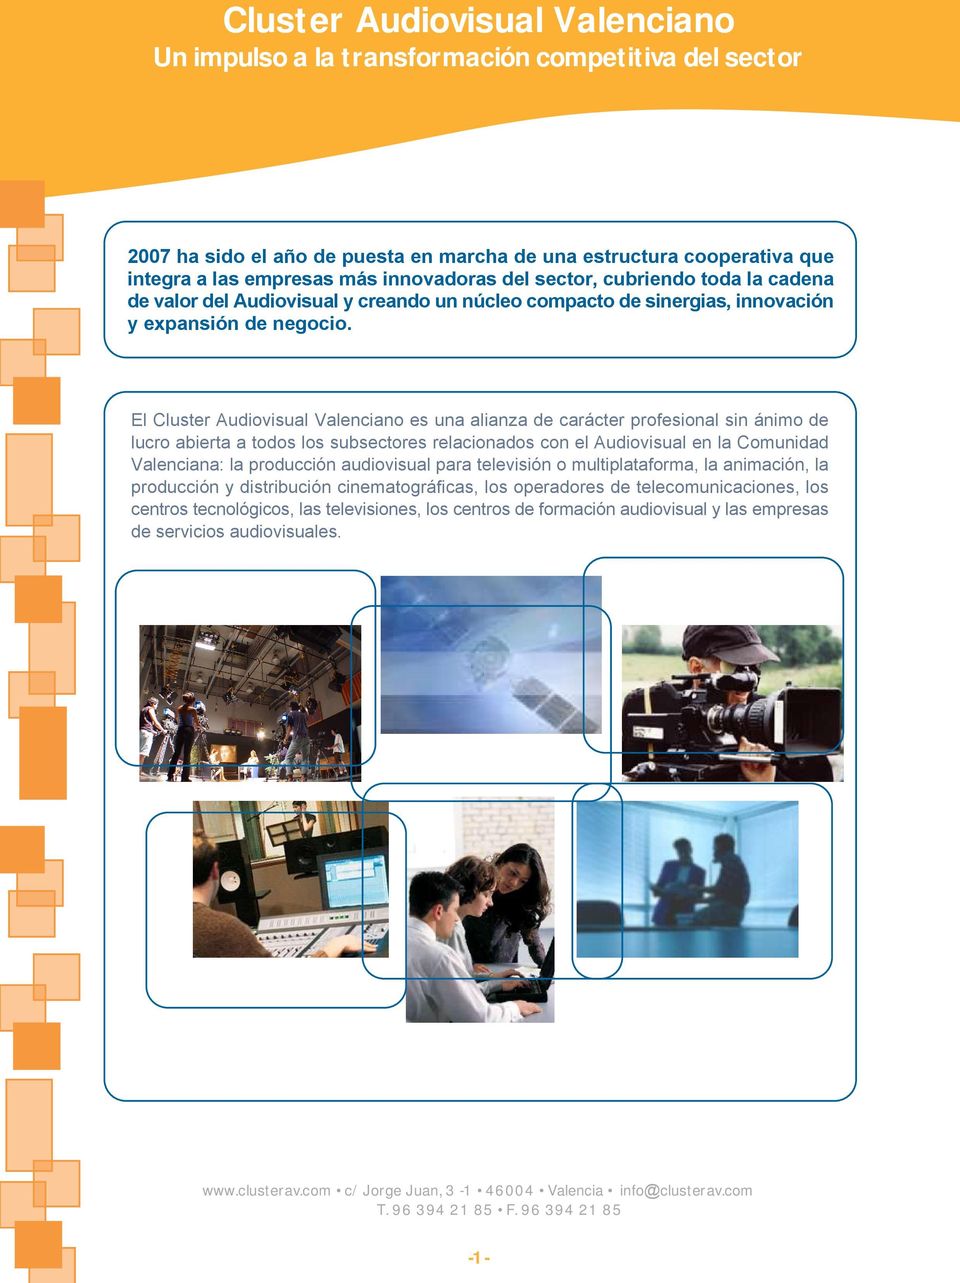 El Cluster Audiovisual Valenciano es una alianza de carácter profesional sin ánimo de lucro abierta a todos los subsectores relacionados con el Audiovisual en la Comunidad